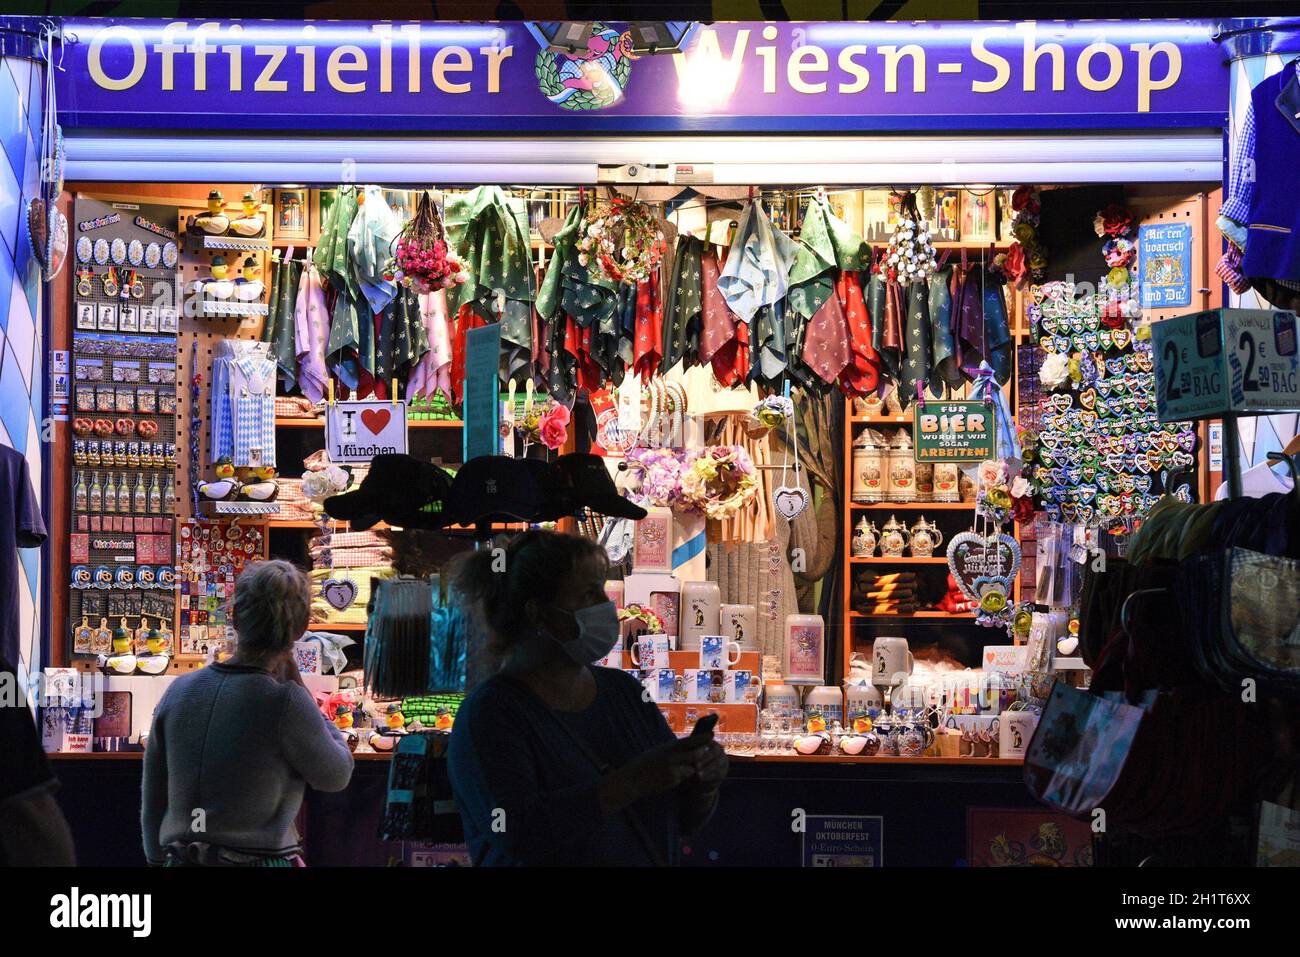 Geöffneter 'Wies'n-Shop' in München trotz des abgesagten Oktoberfestes - Open 'Wies'n-Shop' in Munich despite the canceled Oktoberfest Stock Photo